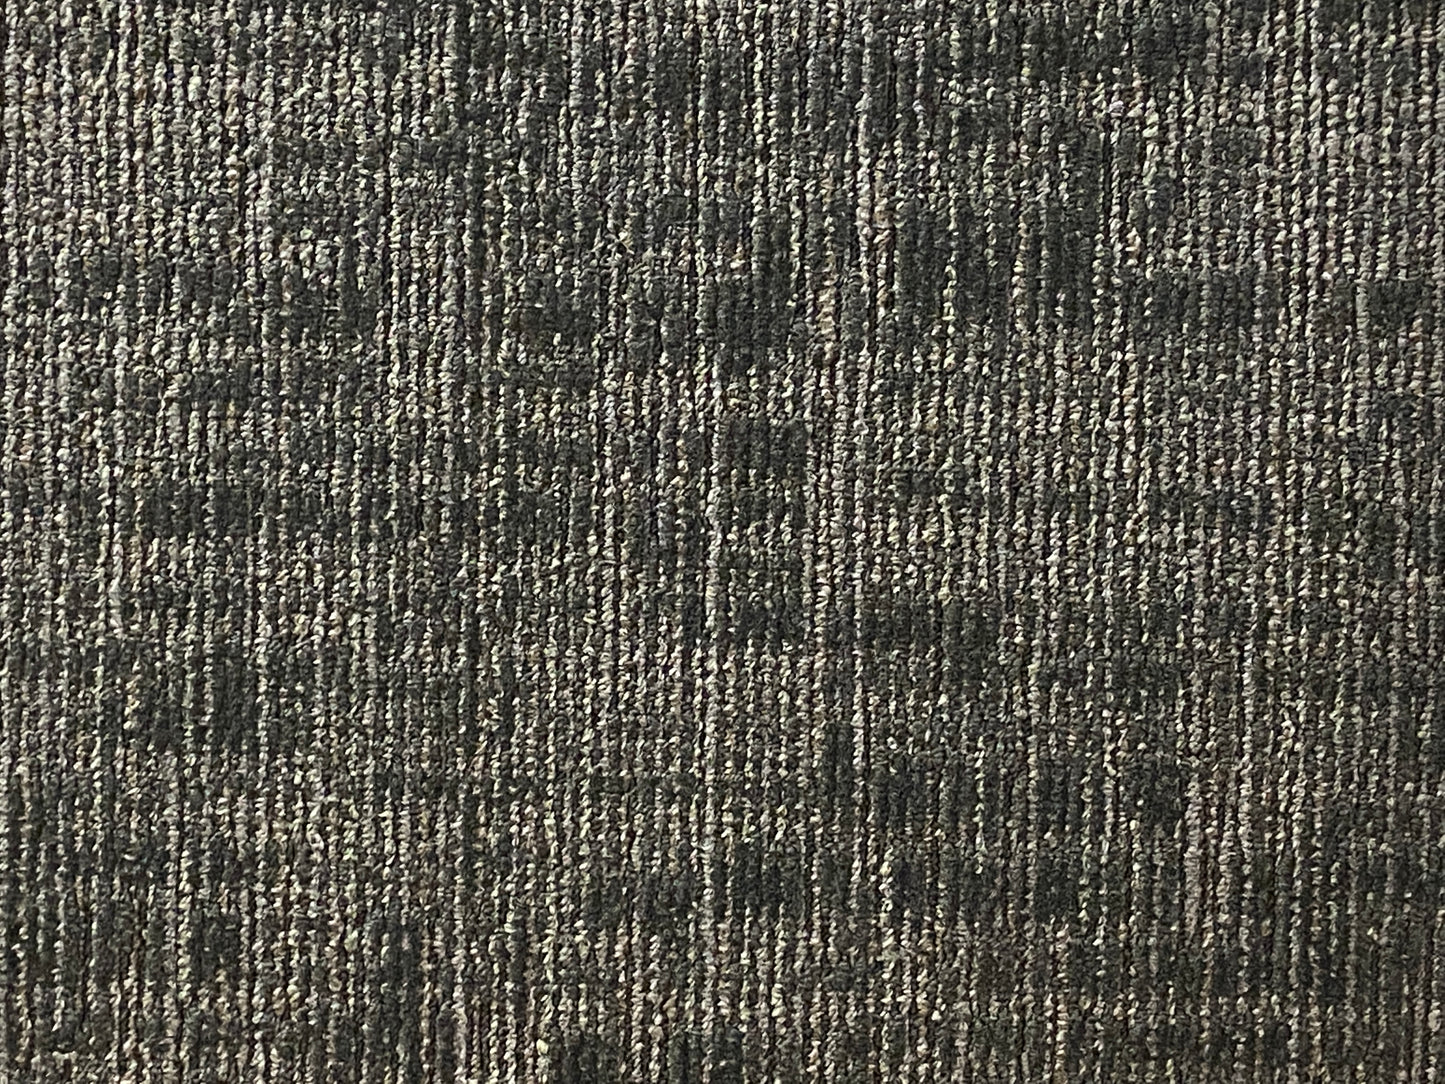 Shaw Carbon Carpet Tile-24"x 24"(12 Tiles/case, 48 sq. ft./case)